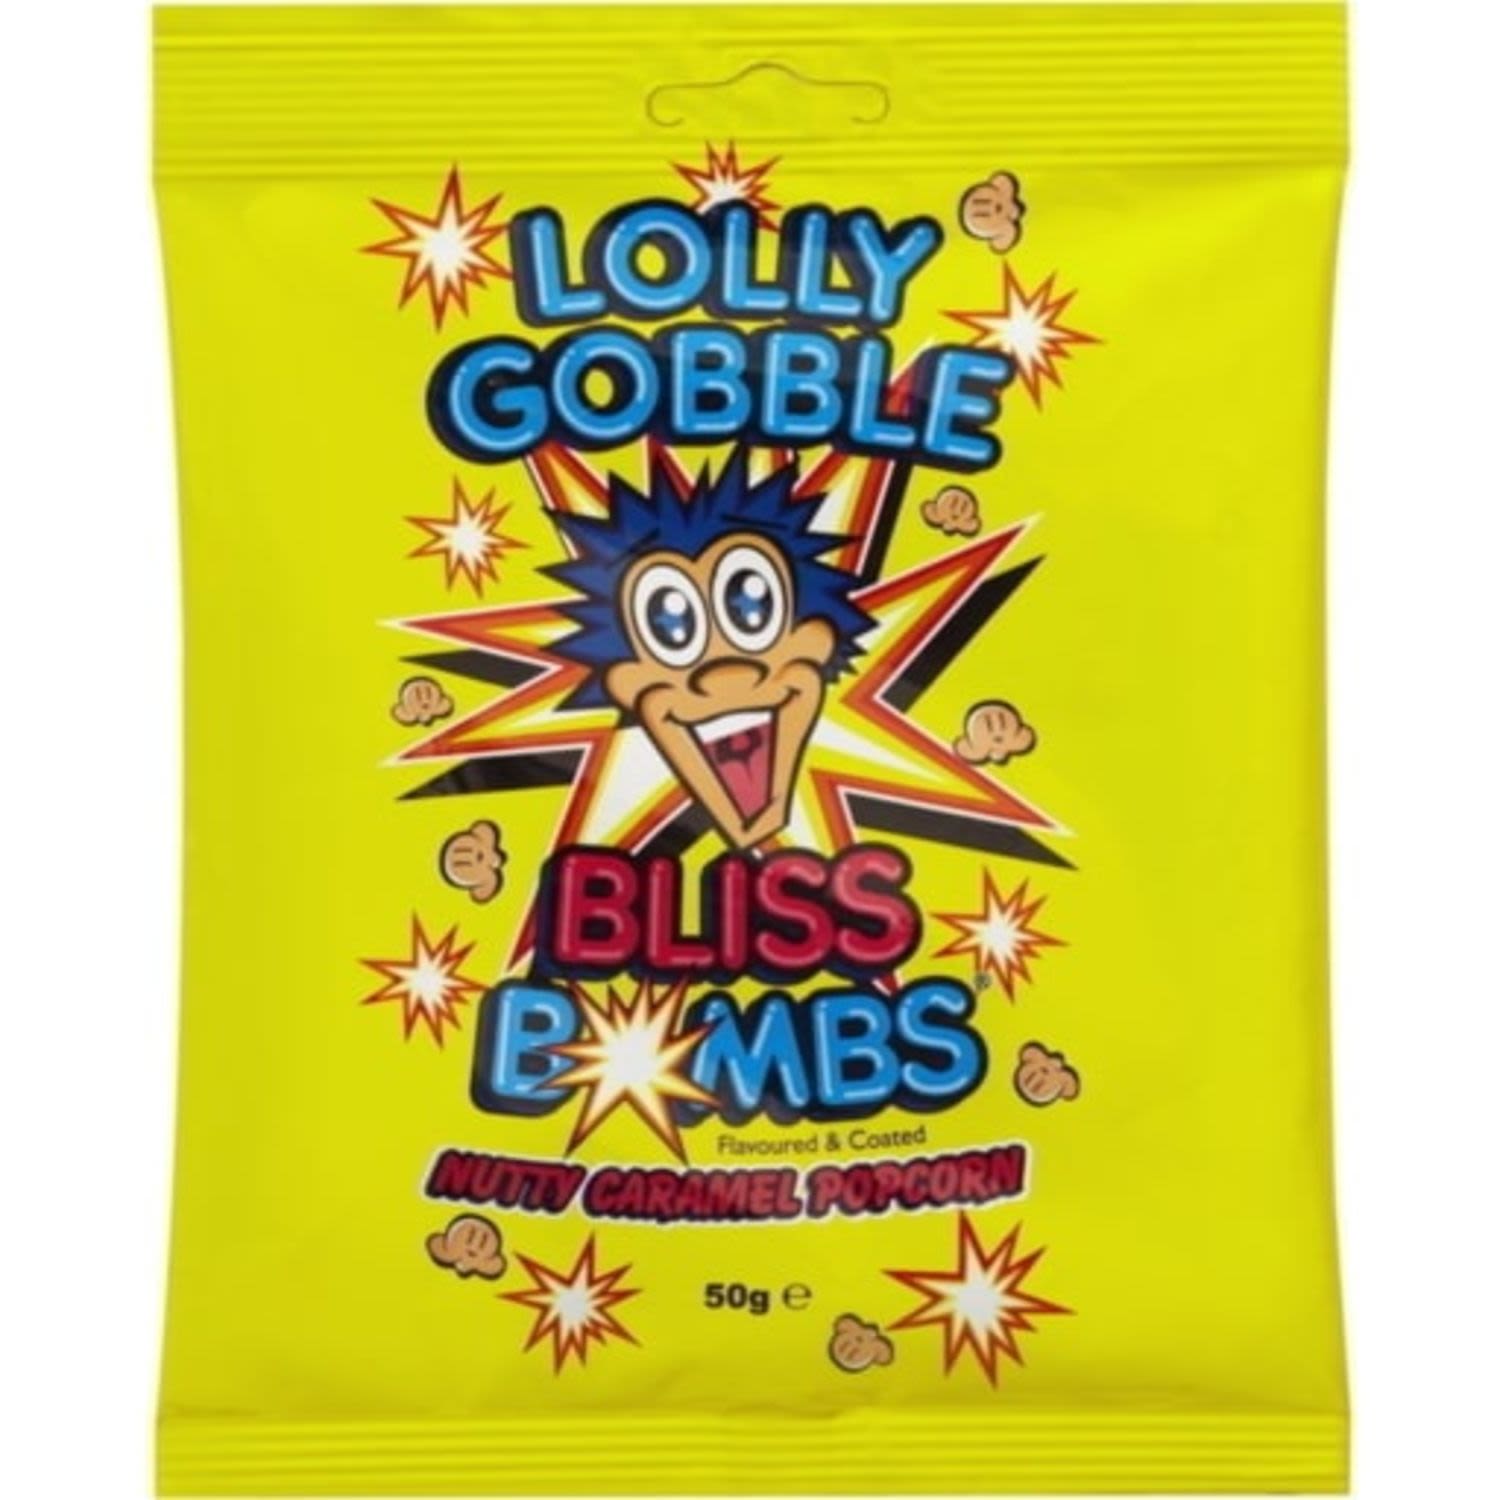 Lolly Gobble Bliss Bombs Nutty Caramel Popcorn, 50 Gram